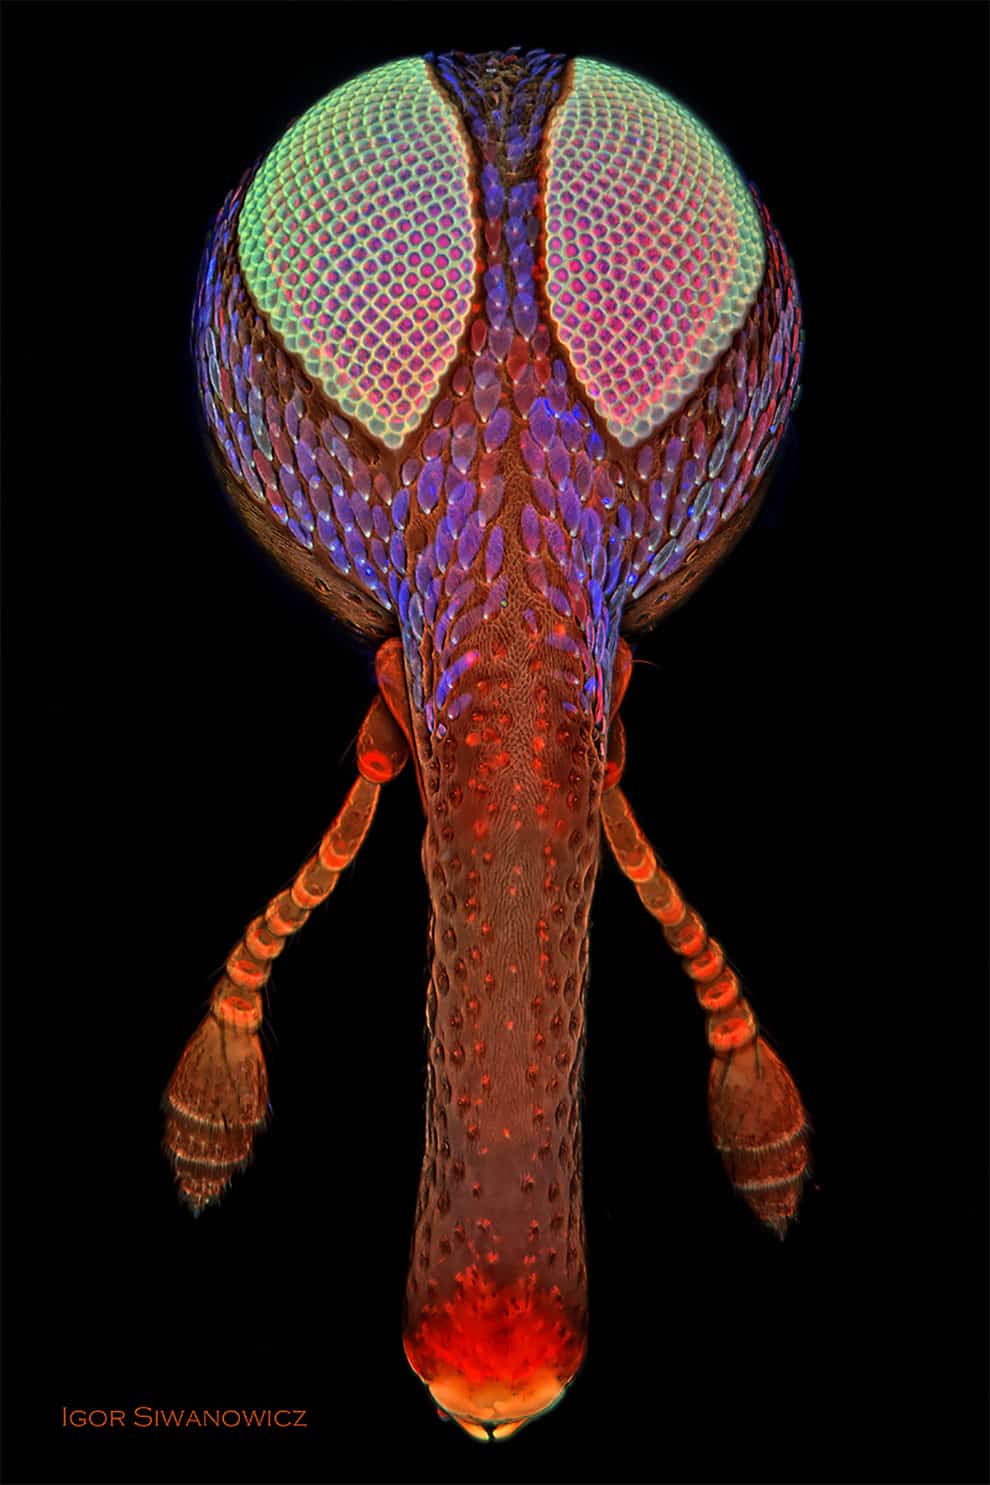 fotografo polaco microscopio fluorescente 13